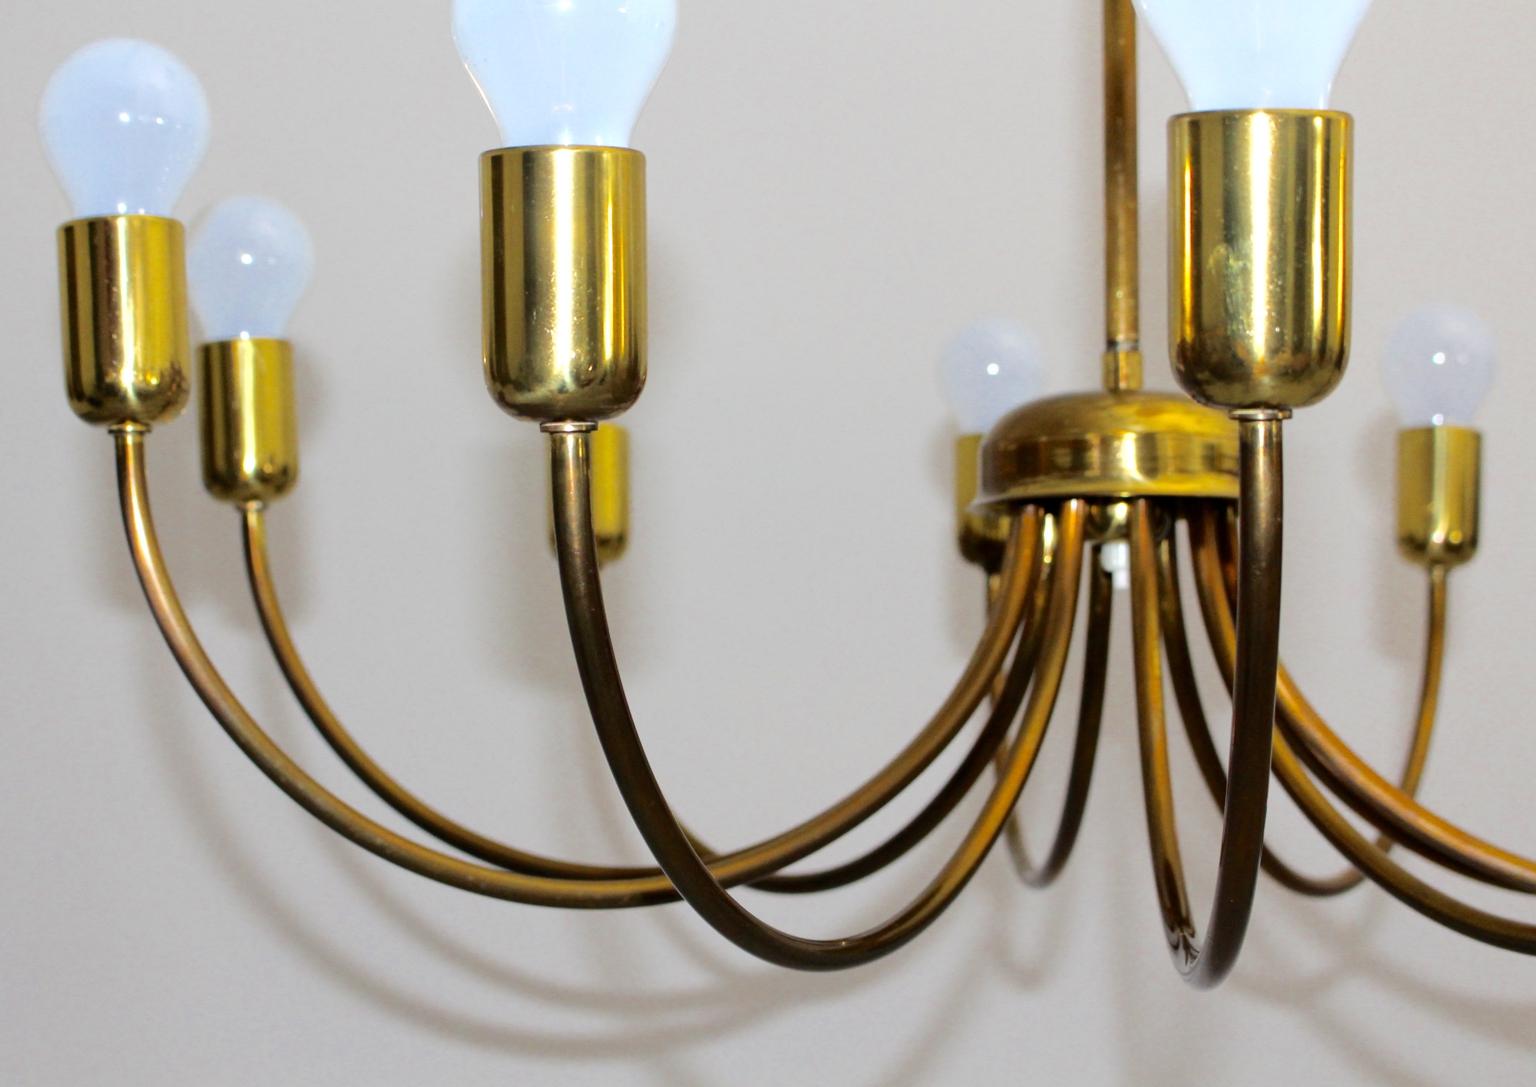 mid century modern brass chandelier